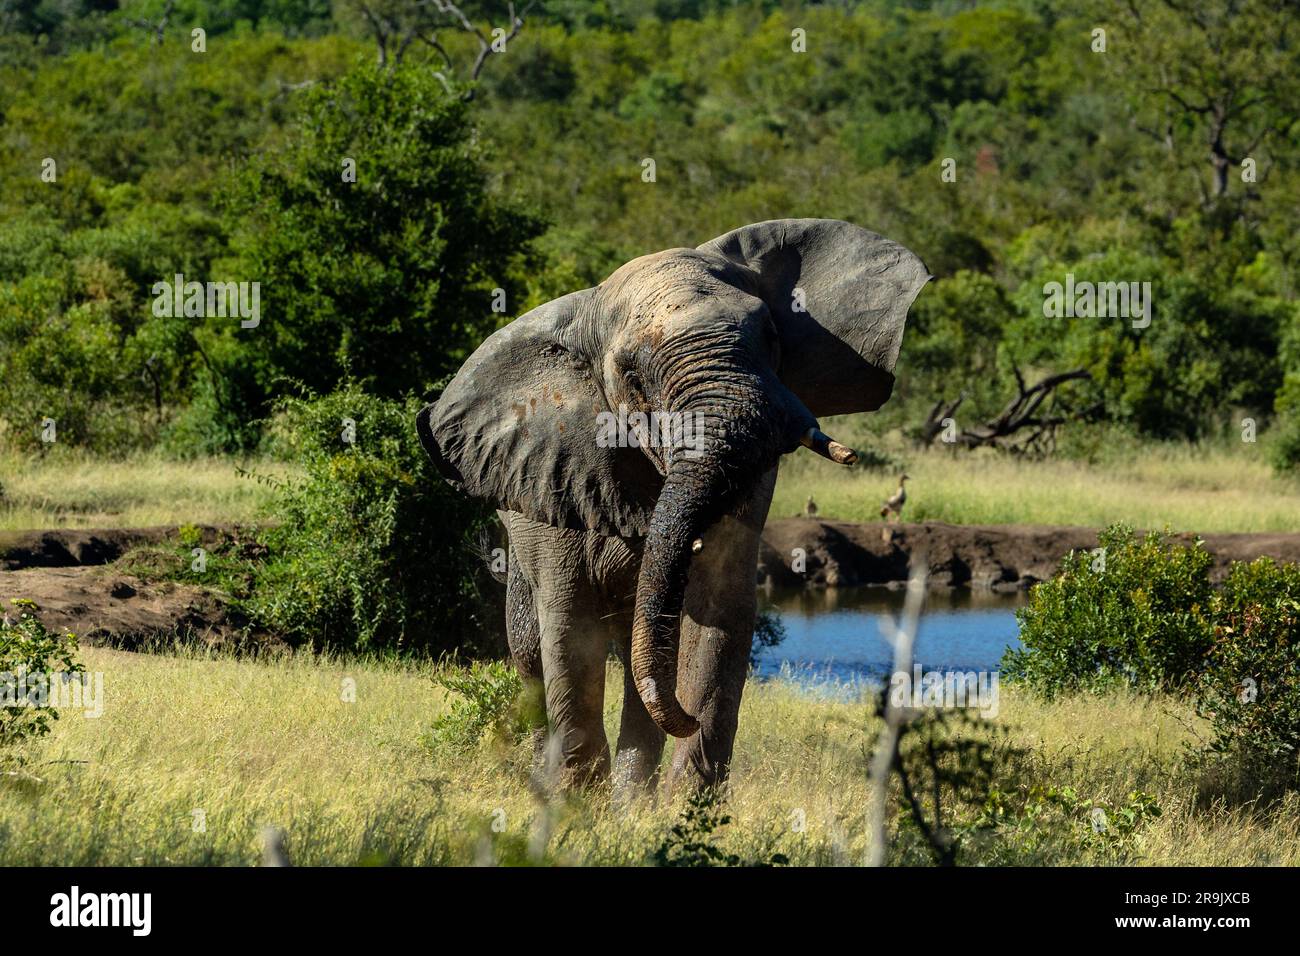 An elephant, Loxodonta africana, shaking its head. Stock Photo